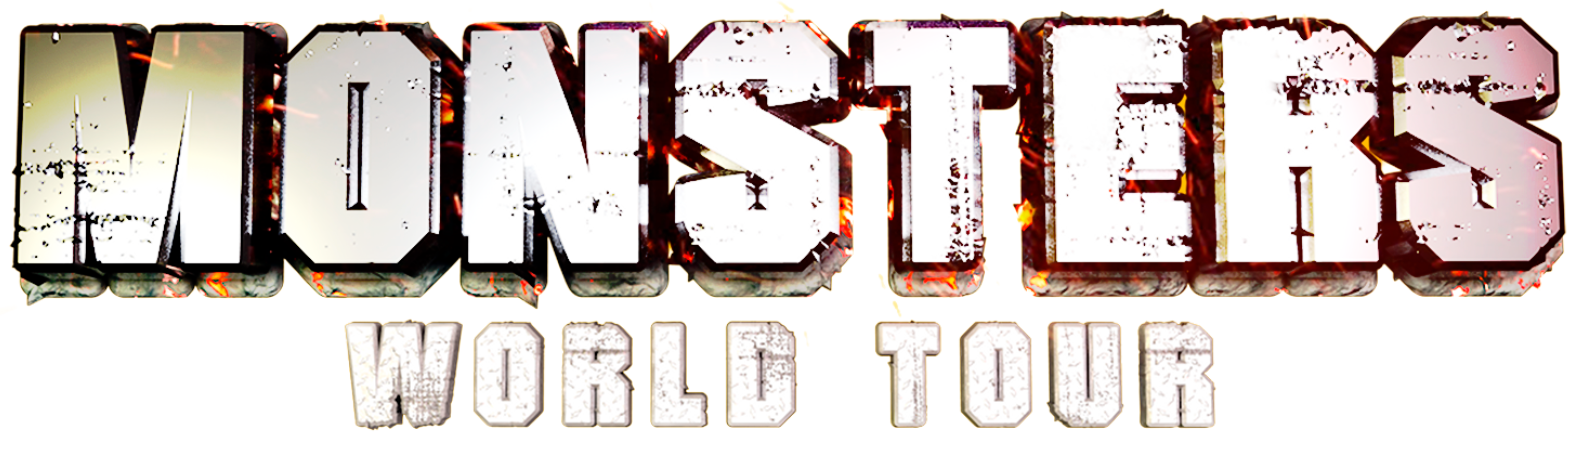 monster world tour.com